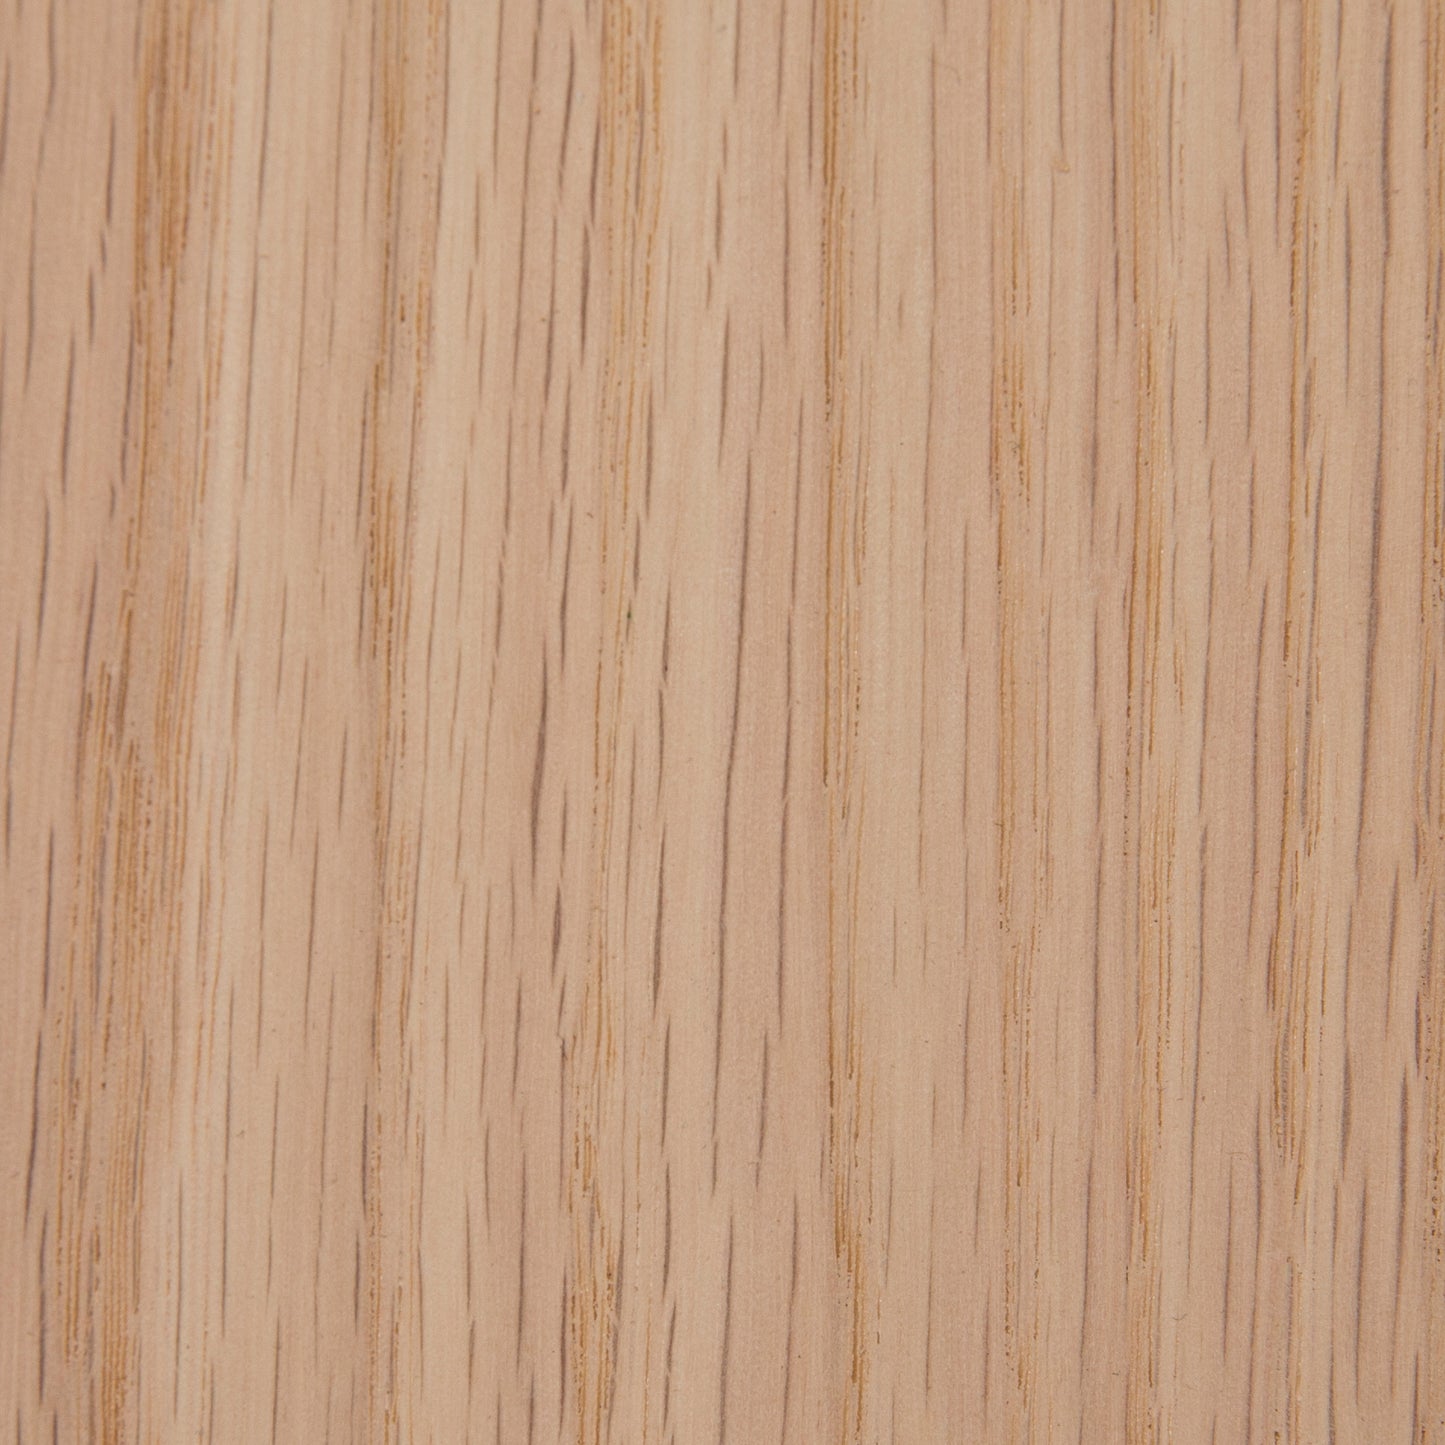 wood blank newel stair part red oak